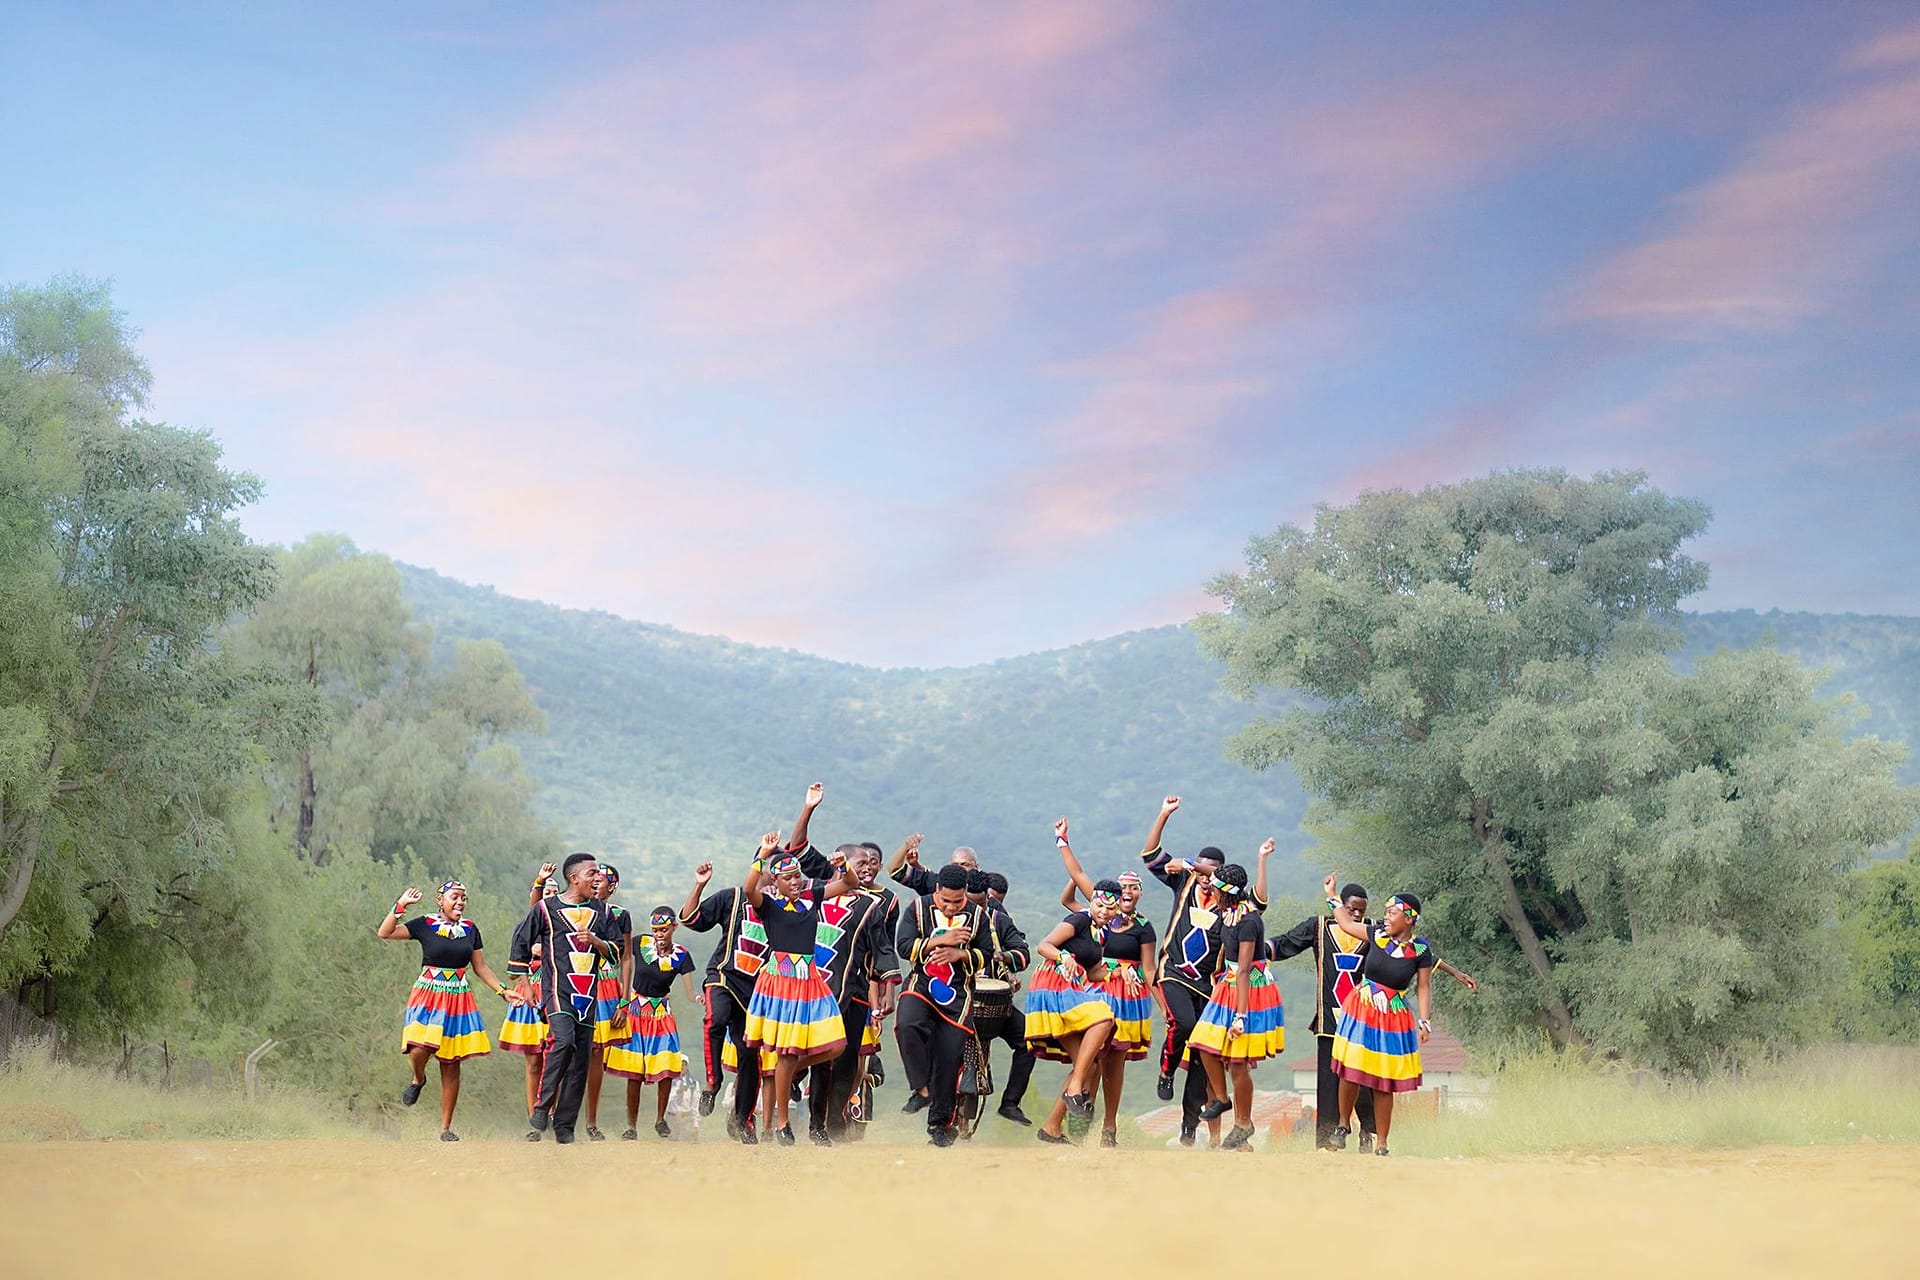 Image: Ndlovu Youth Choir dancing